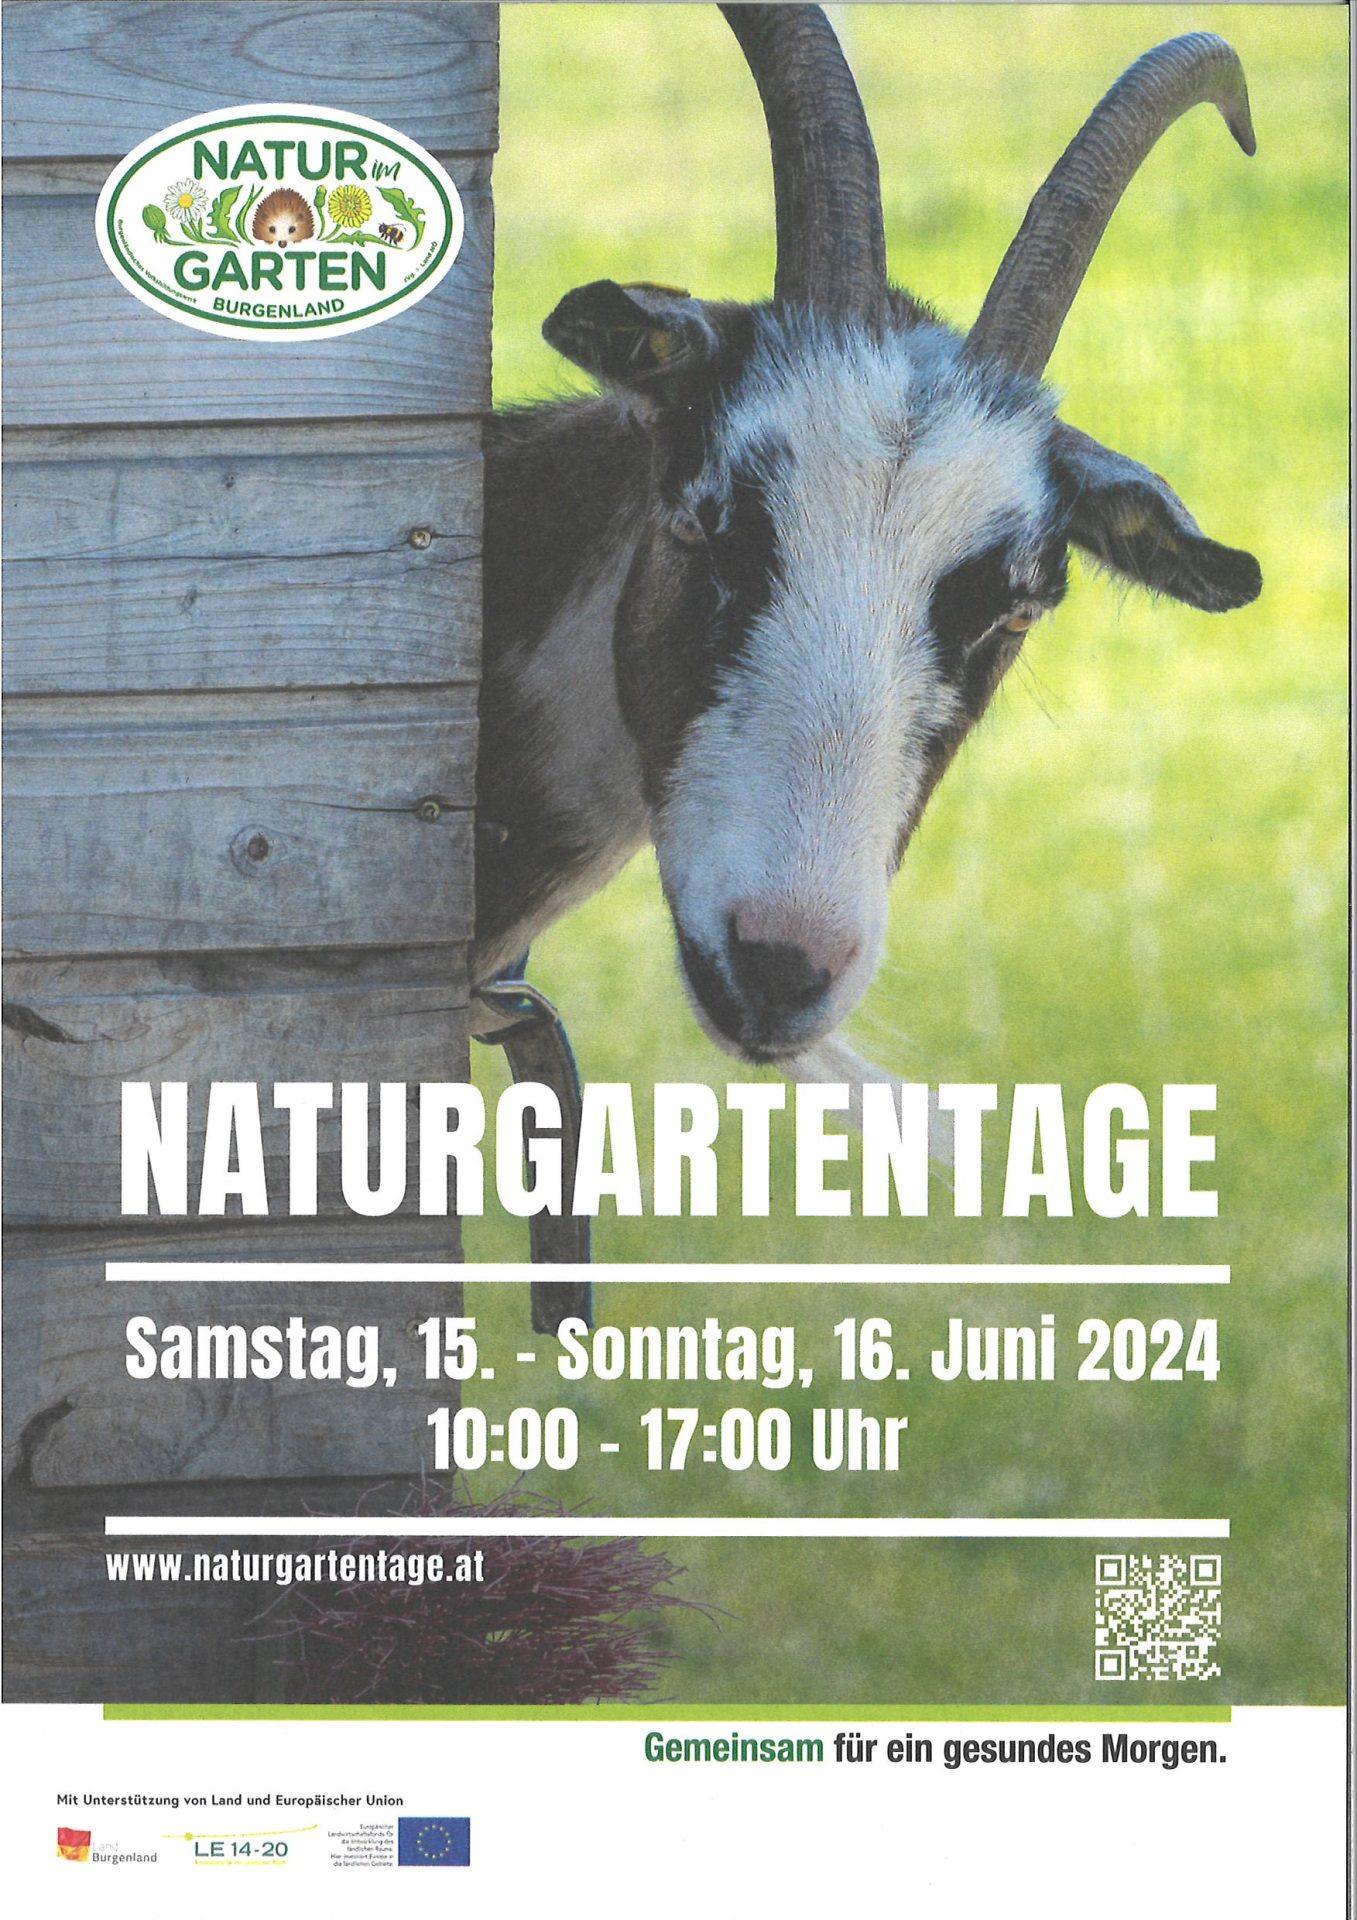 Mehr über den Artikel erfahren Naturgartentage Burgenland am 15. und 16. Juni 2024